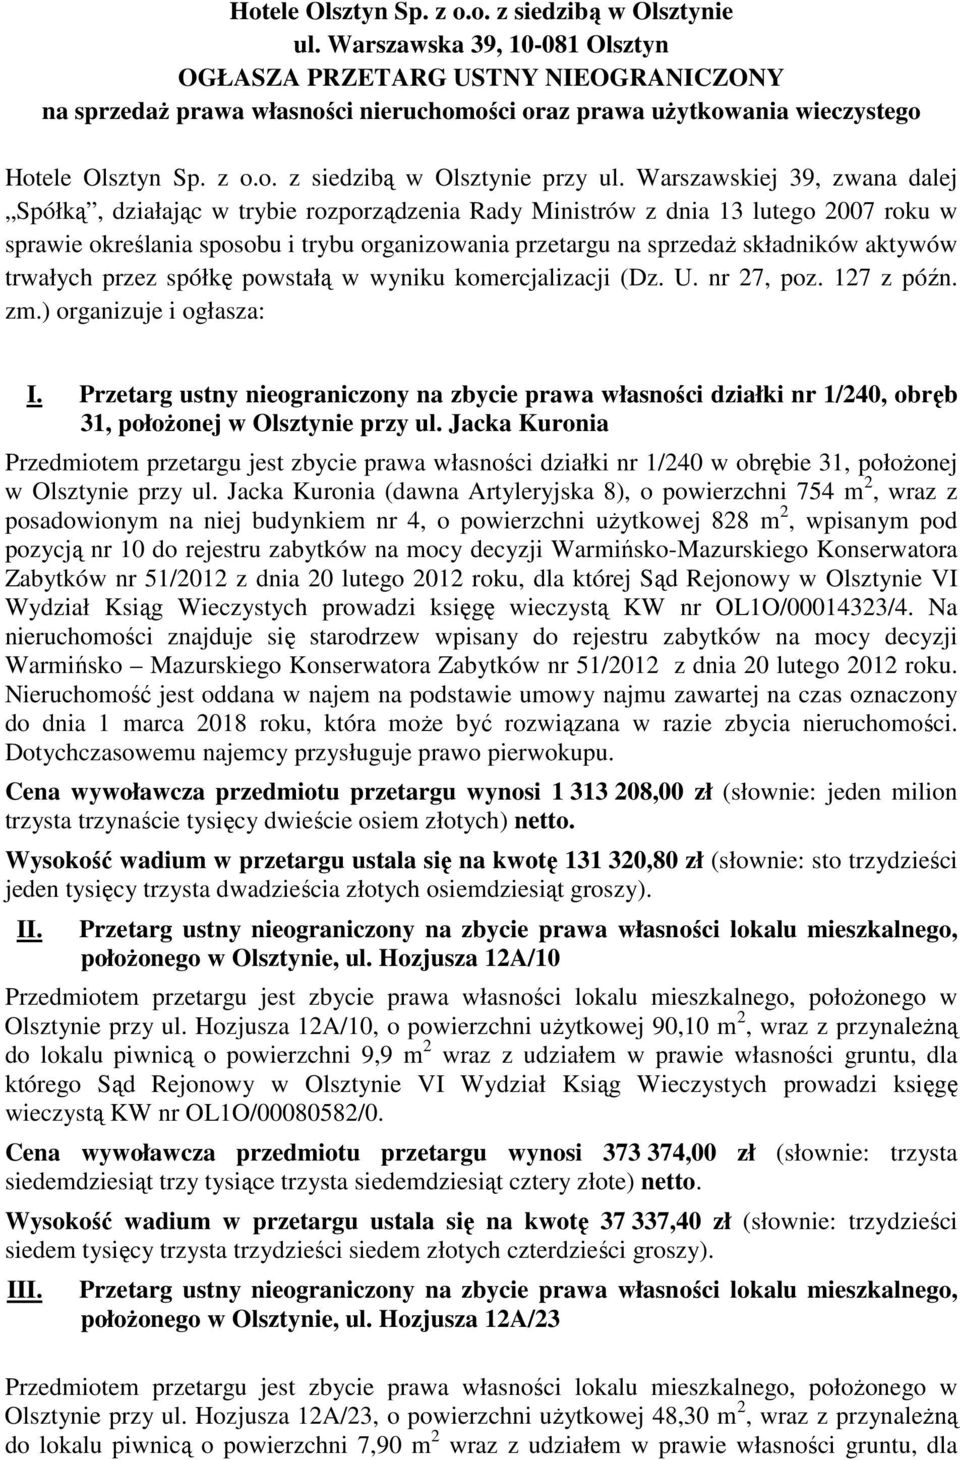 Warszawskiej 39, zwana dalej Spółką, działając w trybie rozporządzenia Rady Ministrów z dnia 13 lutego 2007 roku w sprawie określania sposobu i trybu organizowania przetargu na sprzedaŝ składników